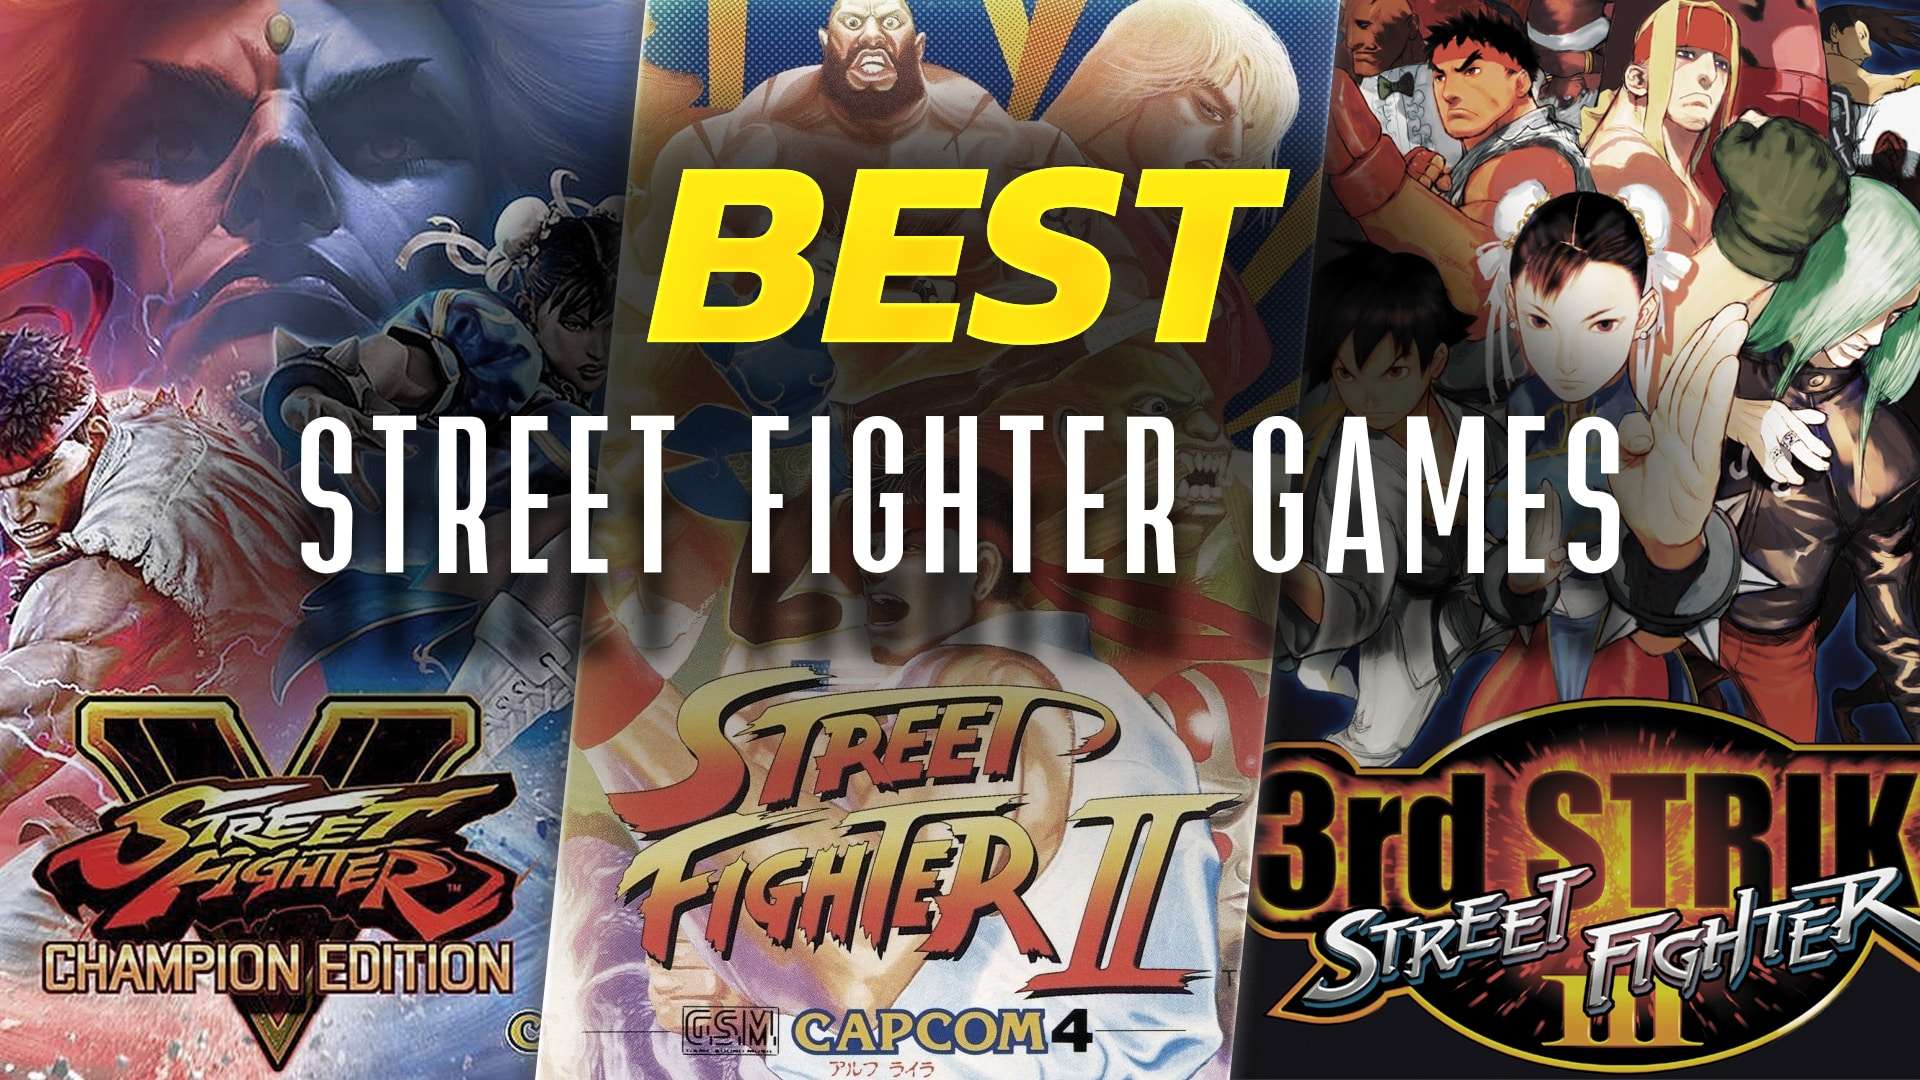 Best Street Fighter games